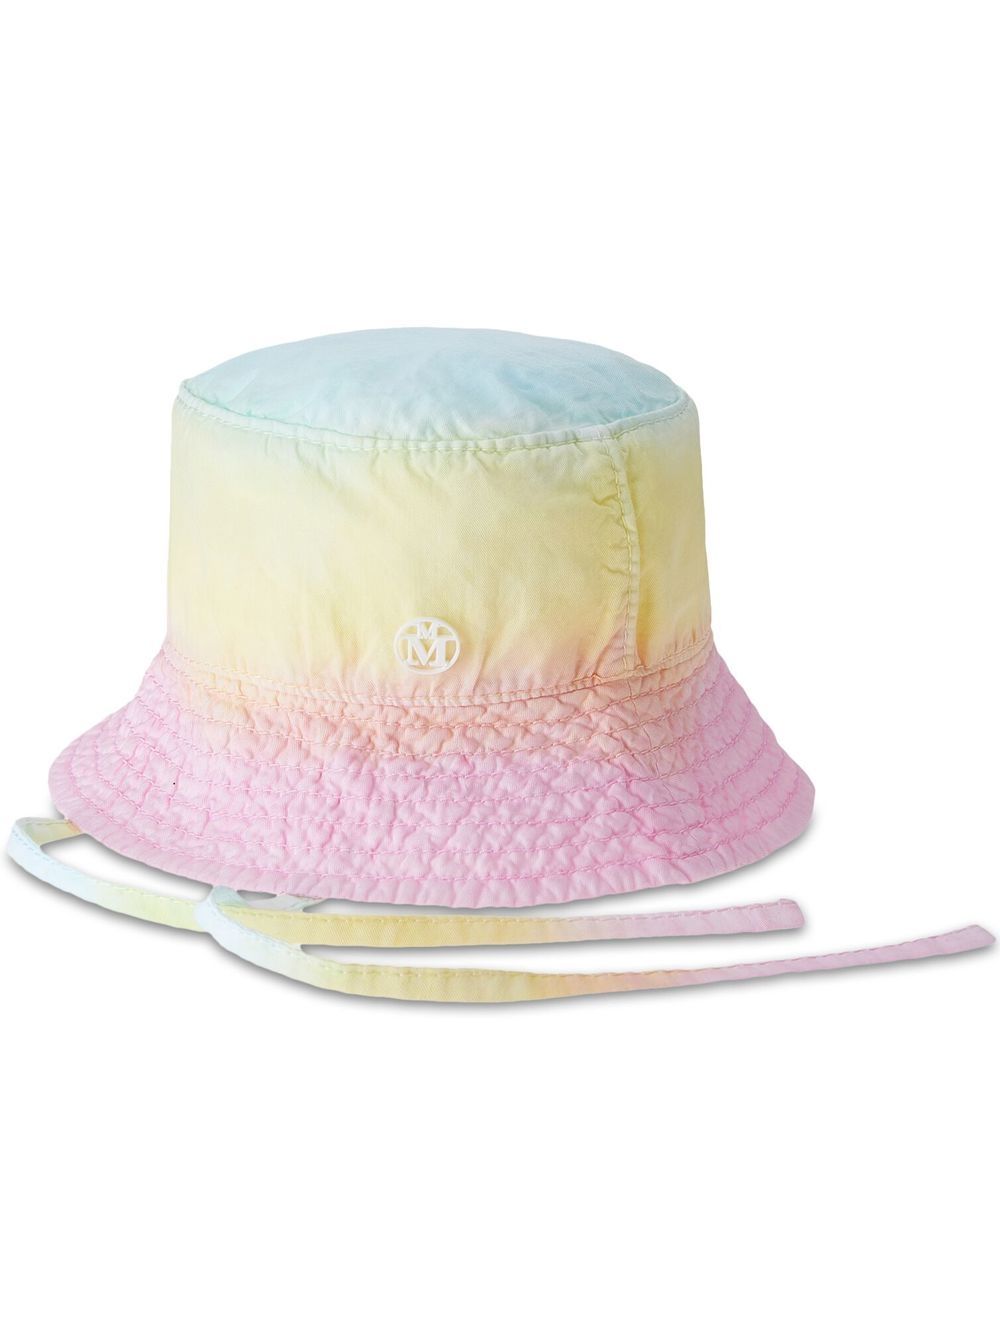 Maison Michel Angele tie-dye bucket hat - Multicolour von Maison Michel